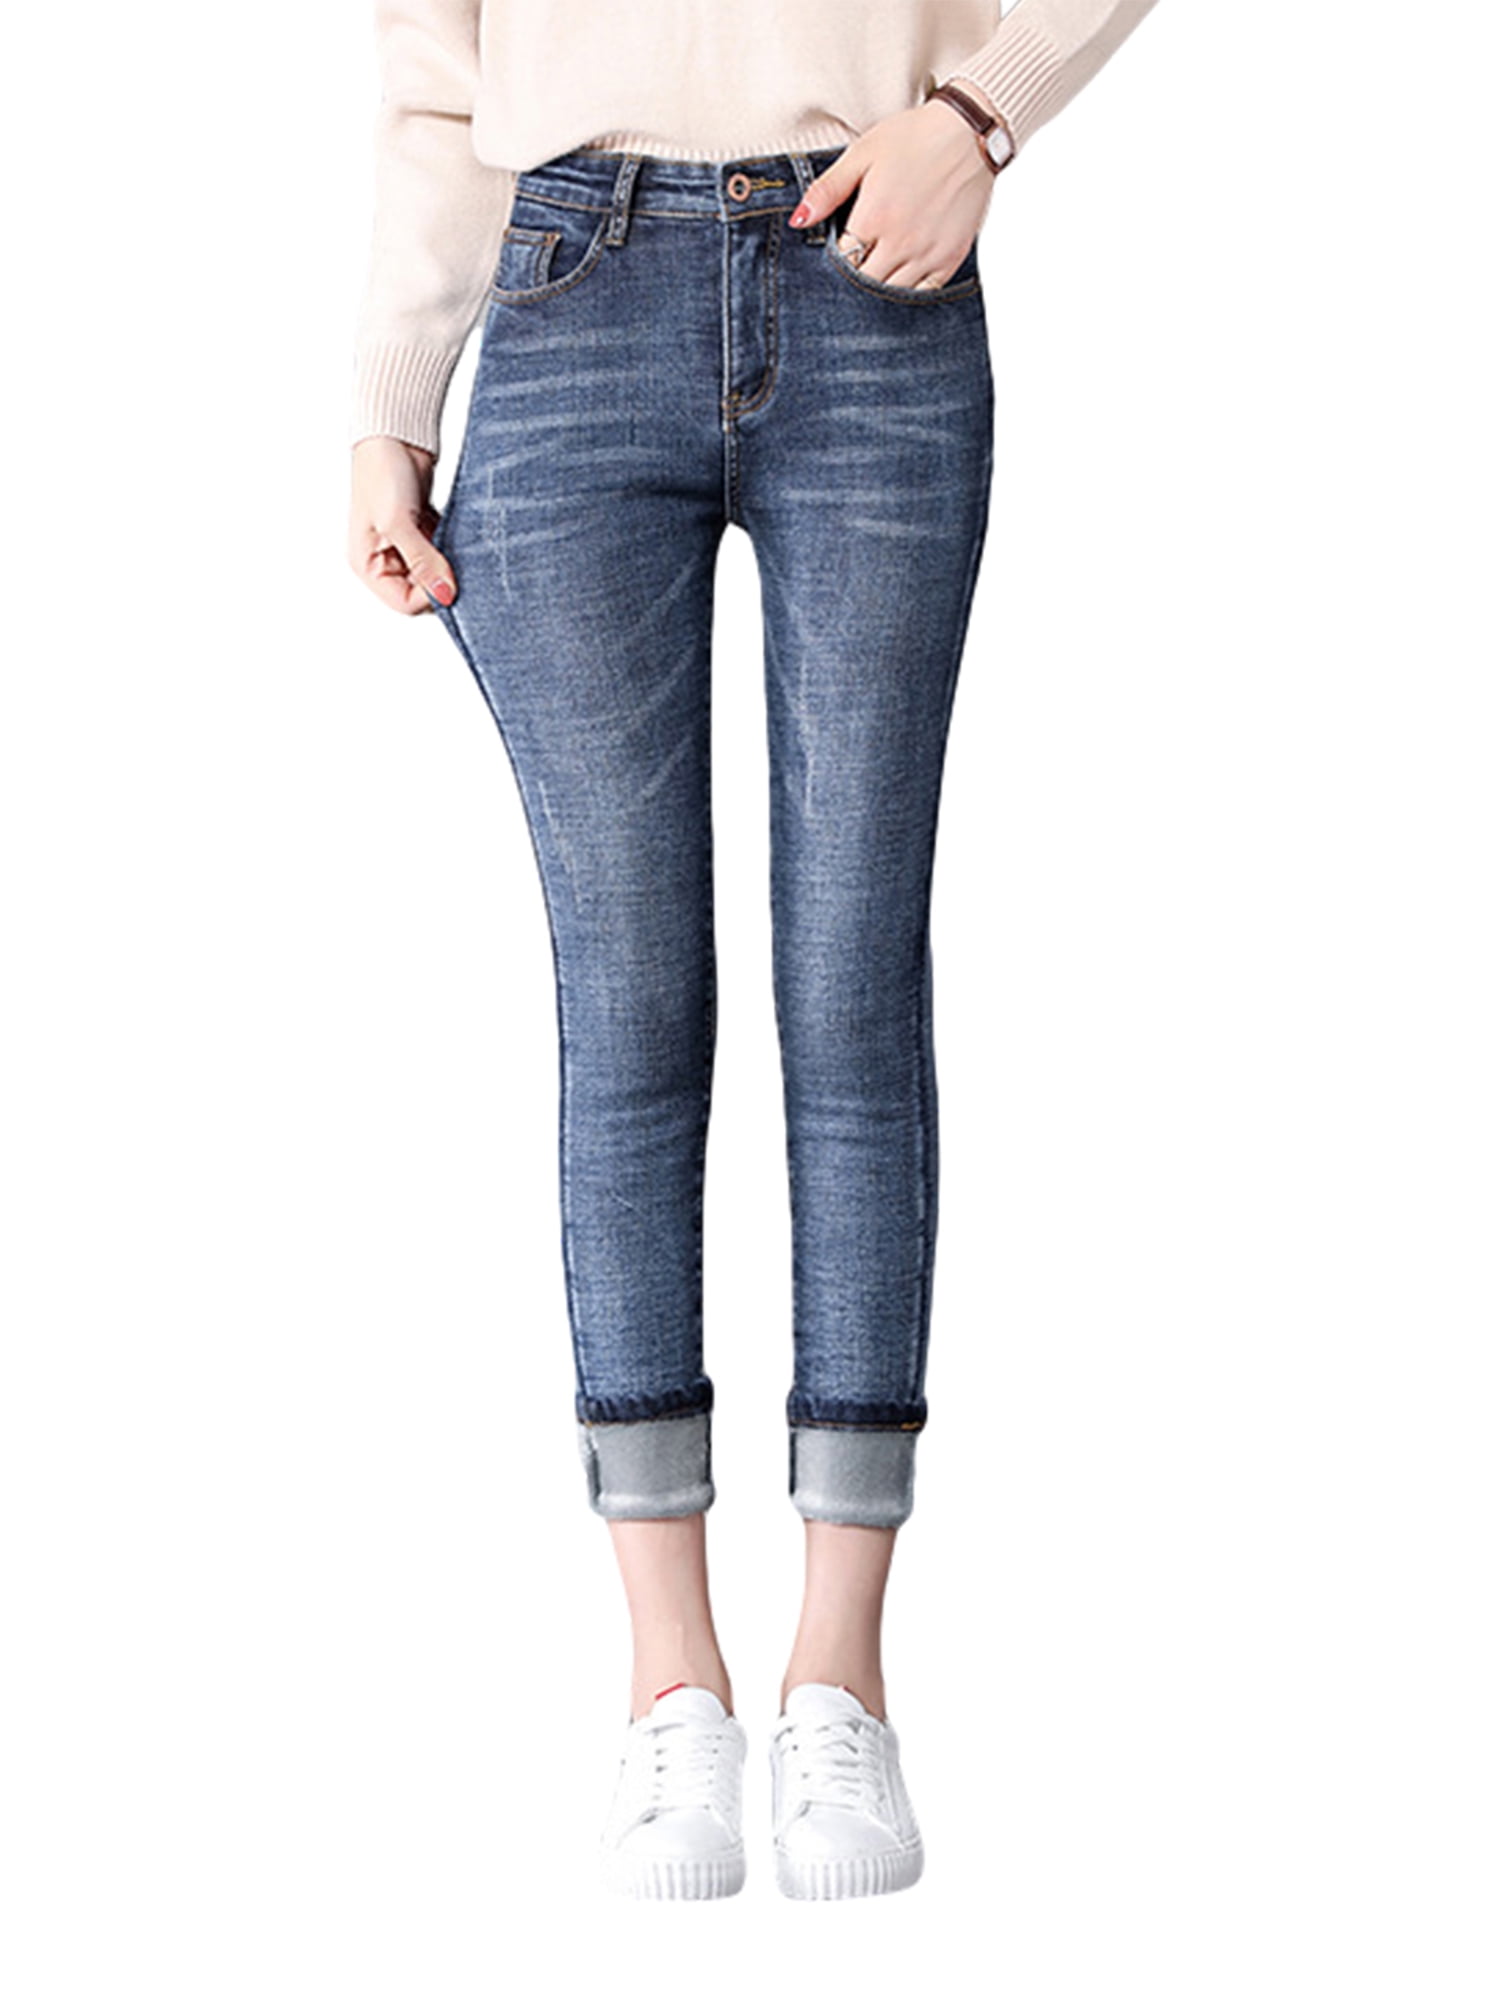 Camii Mia Fleece Lined Jeans for Women Winter Jeans Warm Pants